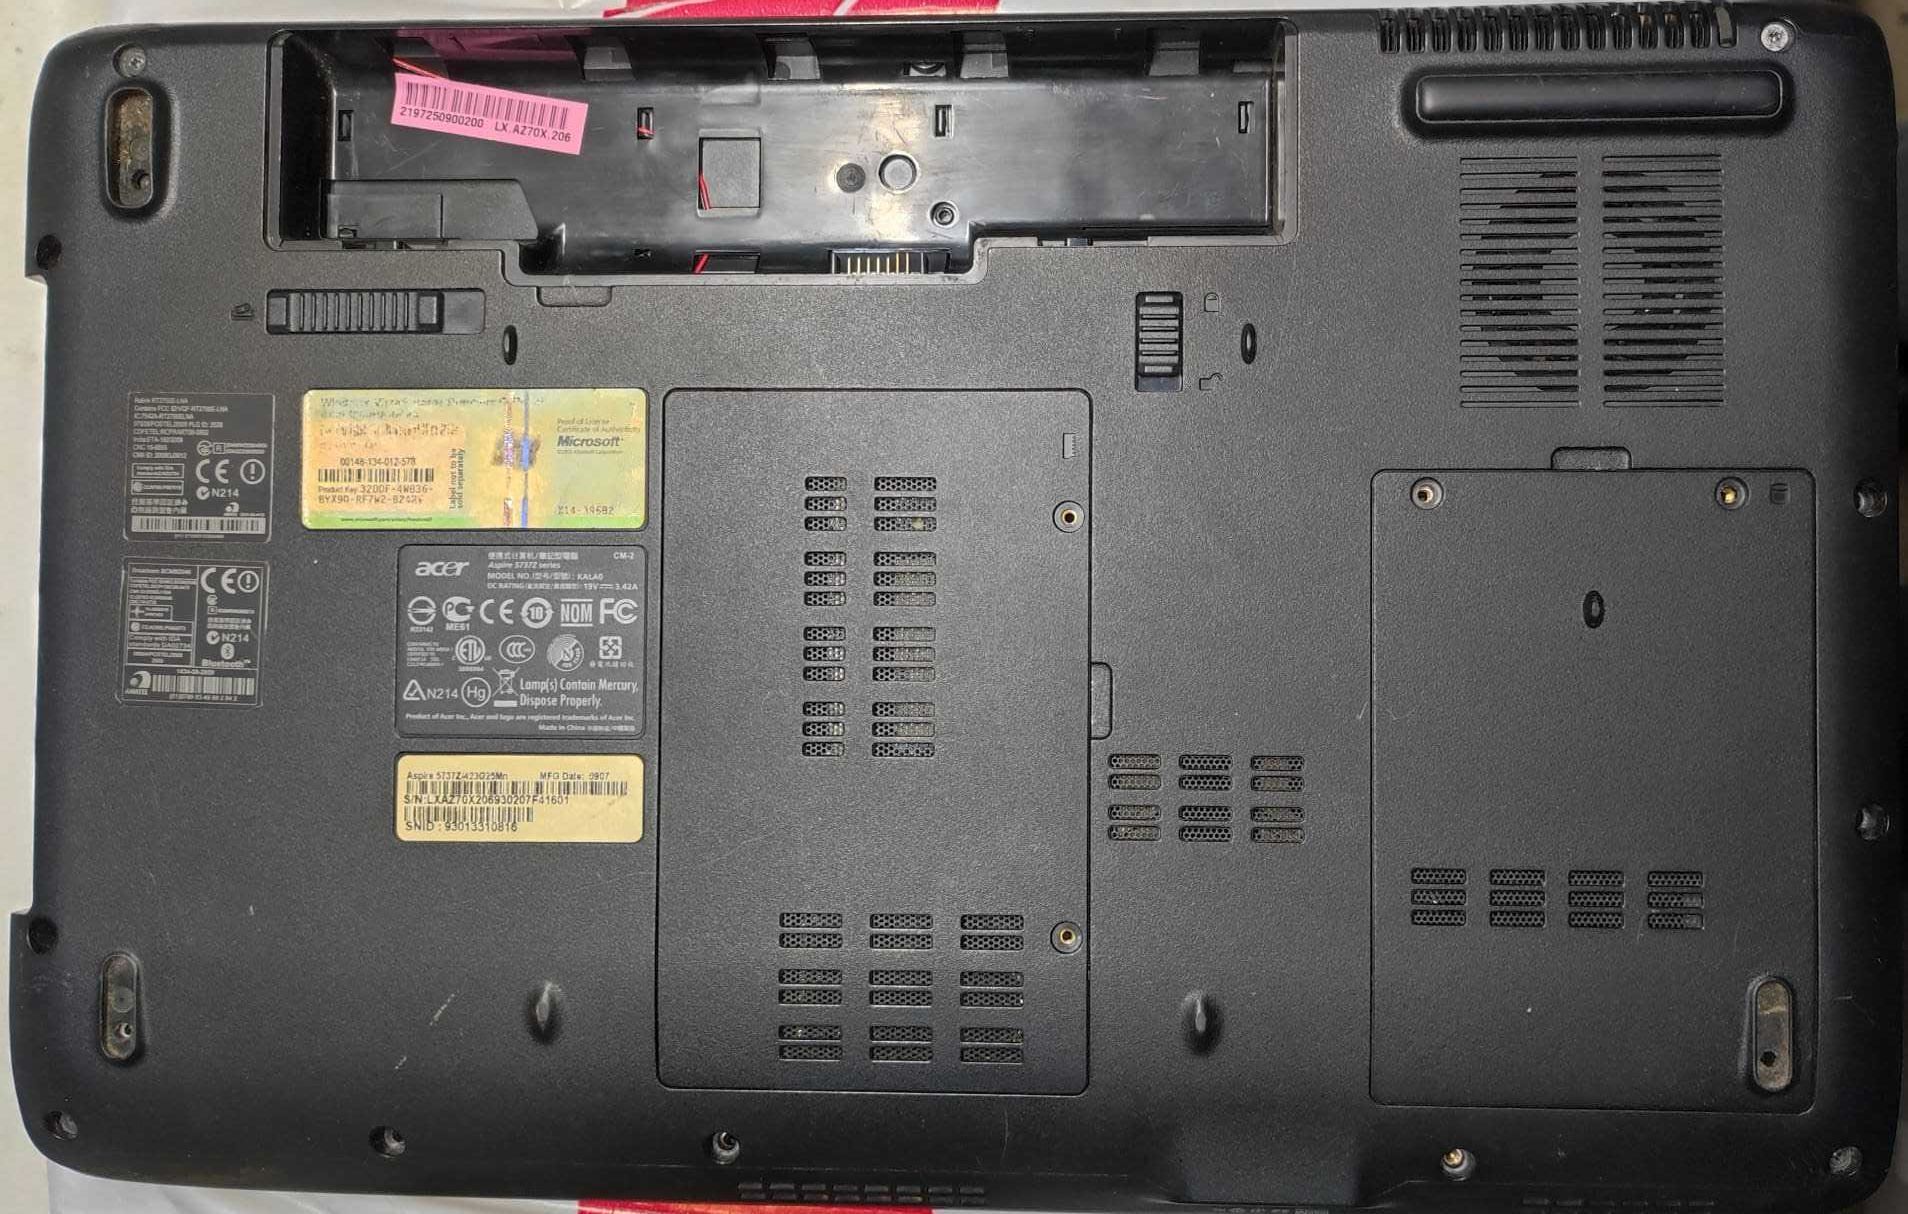 Dezmembrez laptop Acer 5737z